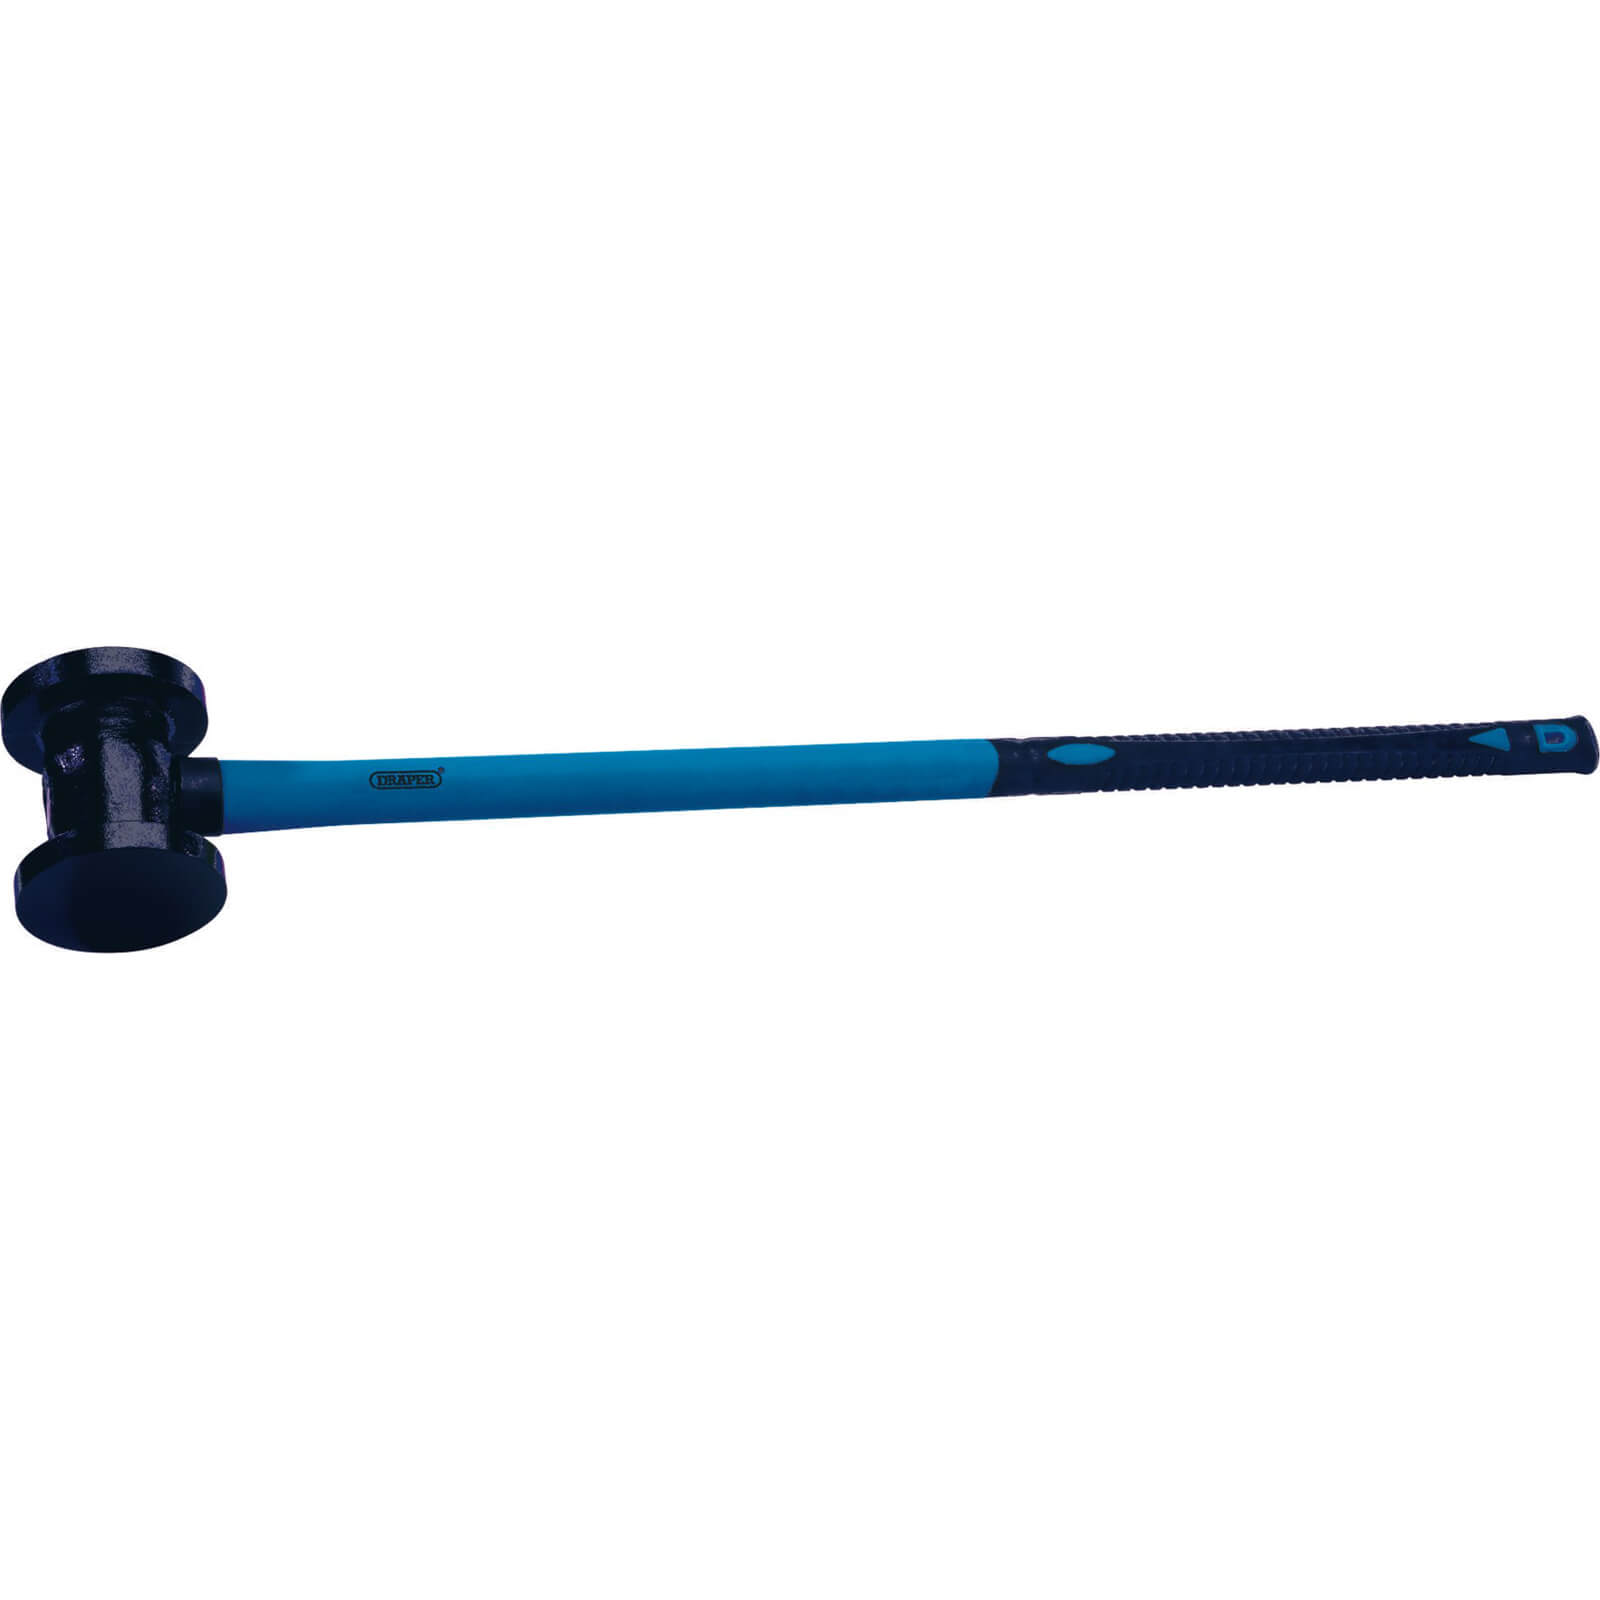 Draper Fencing Hammer with Fibreglass Handle 5.4kg